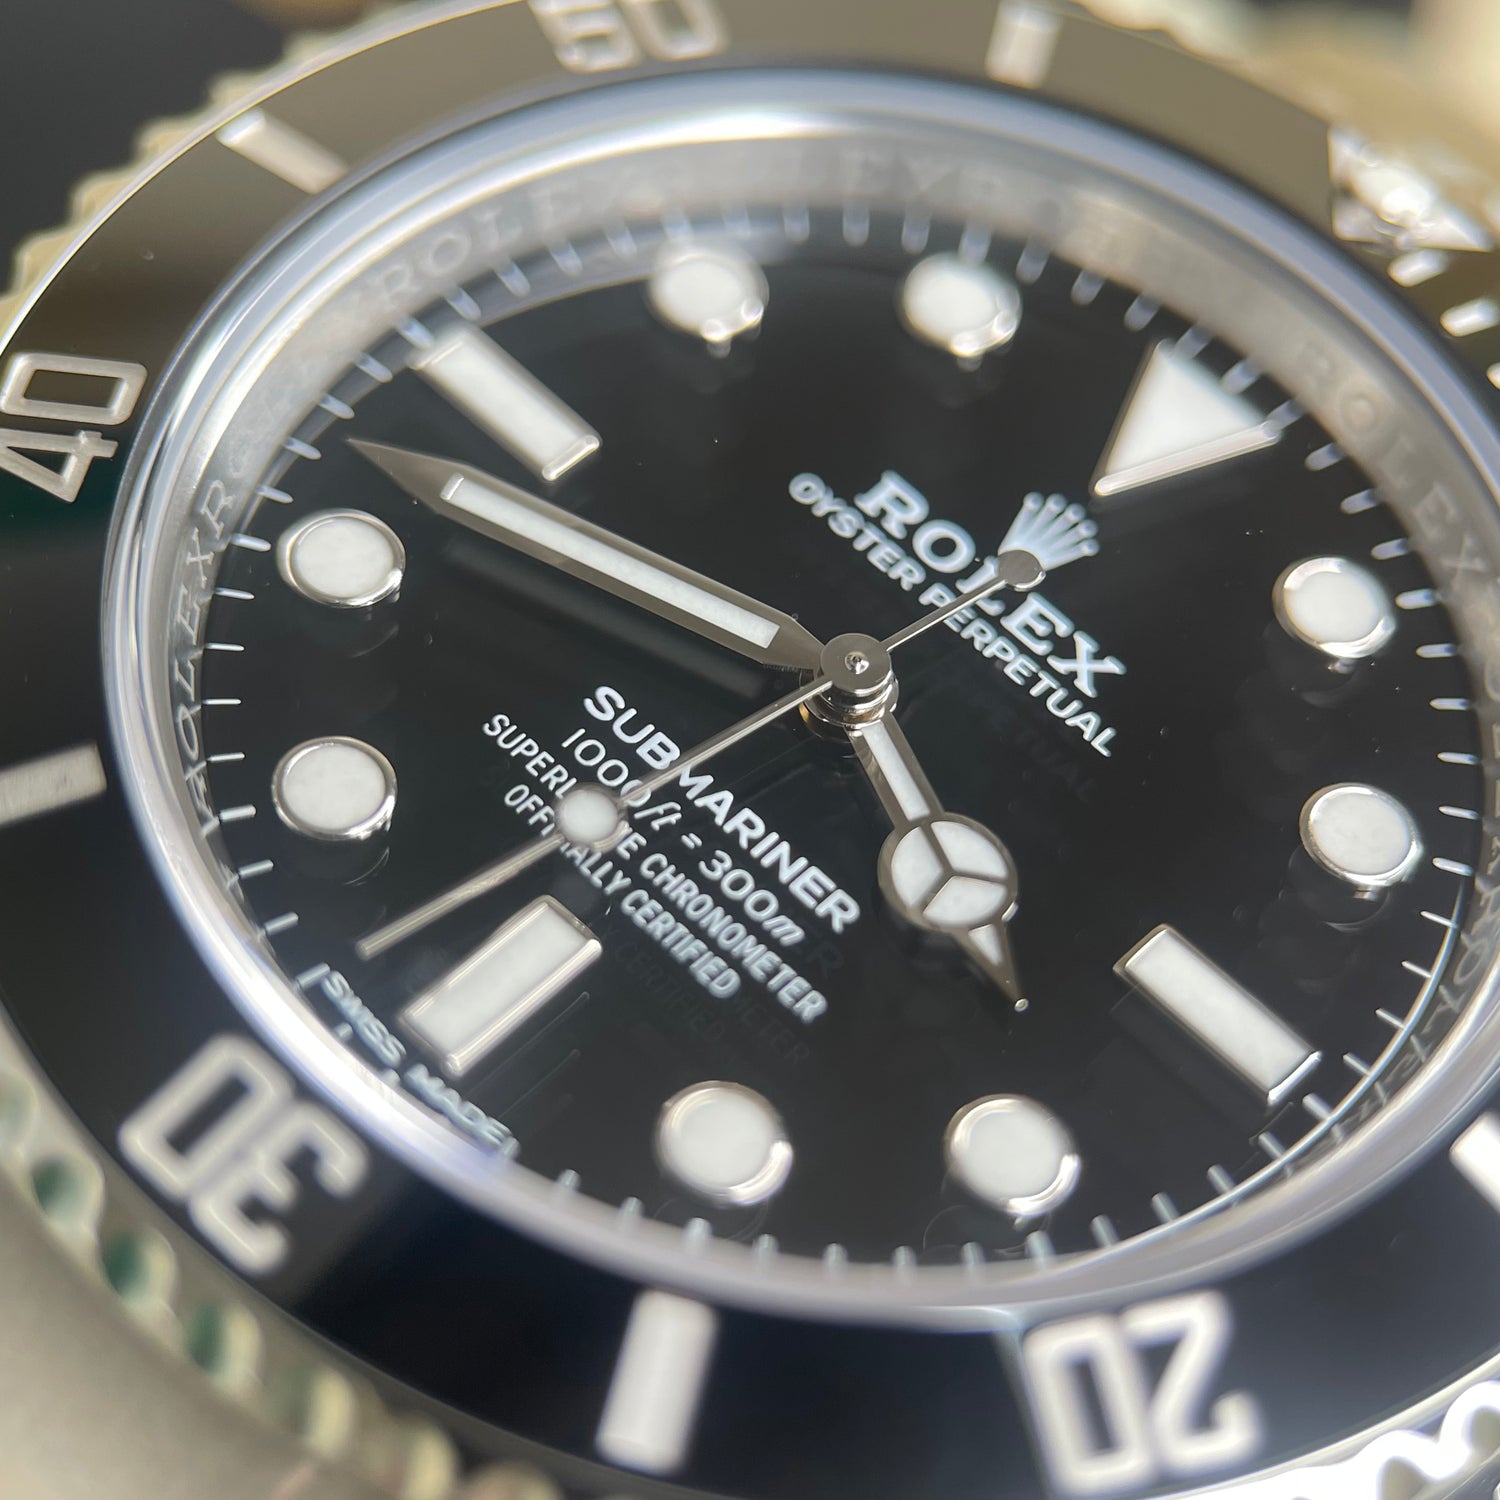 Rolex Submariner No Date 114060 2019 Full Set Watch